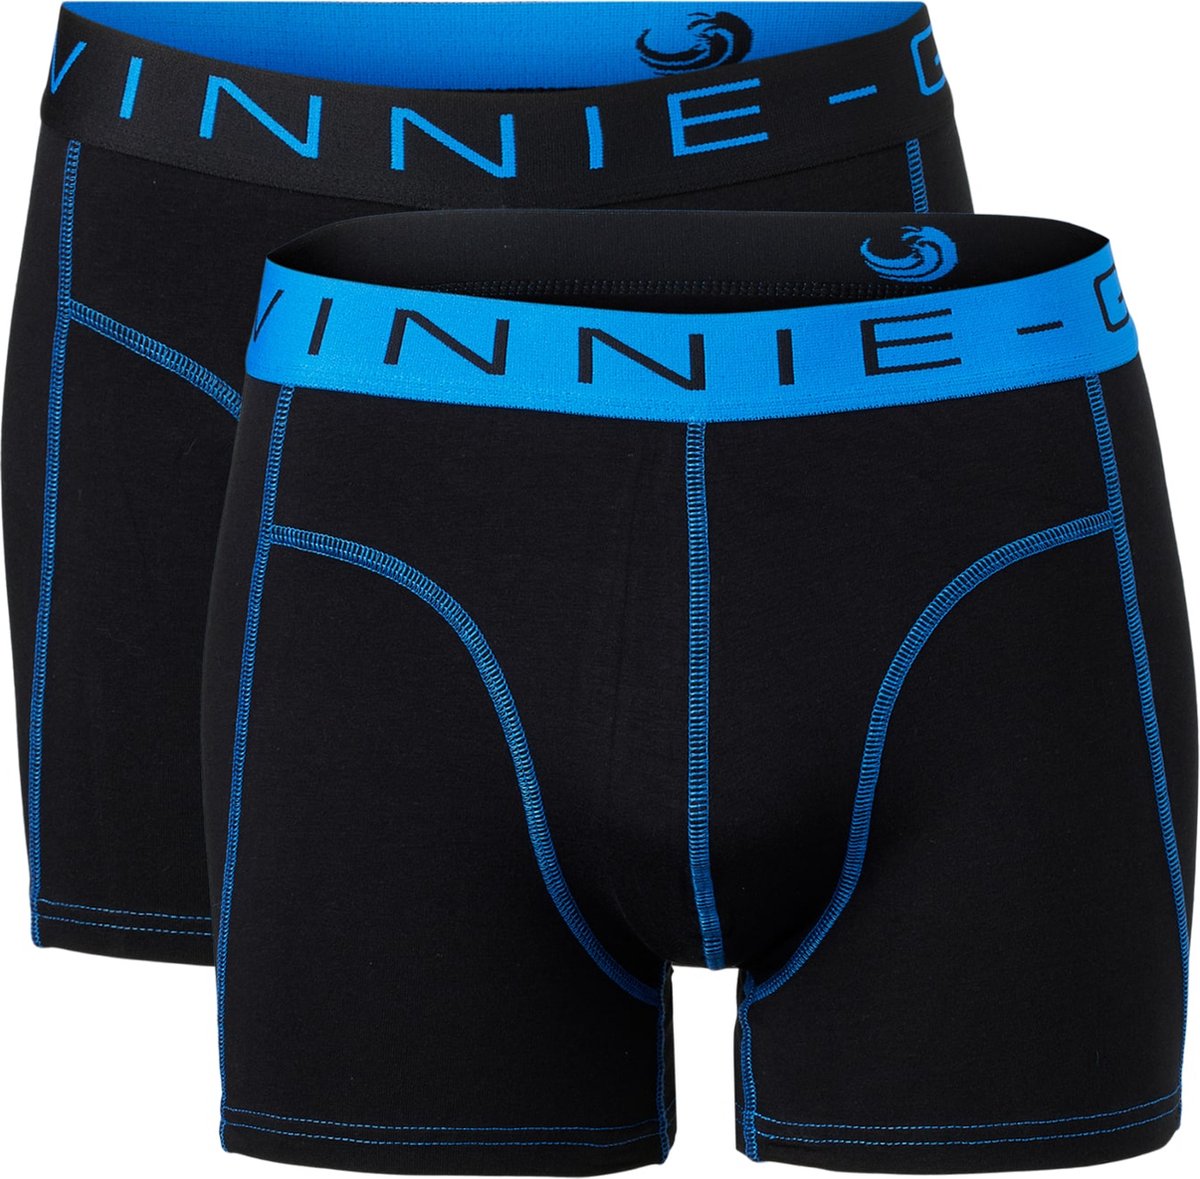 Vinnie-G Boxershorts 2-pack Black/Blue Stitches - Maat XXL - Heren Onderbroeken Zwart - Geen irritante Labels - Katoen heren ondergoed